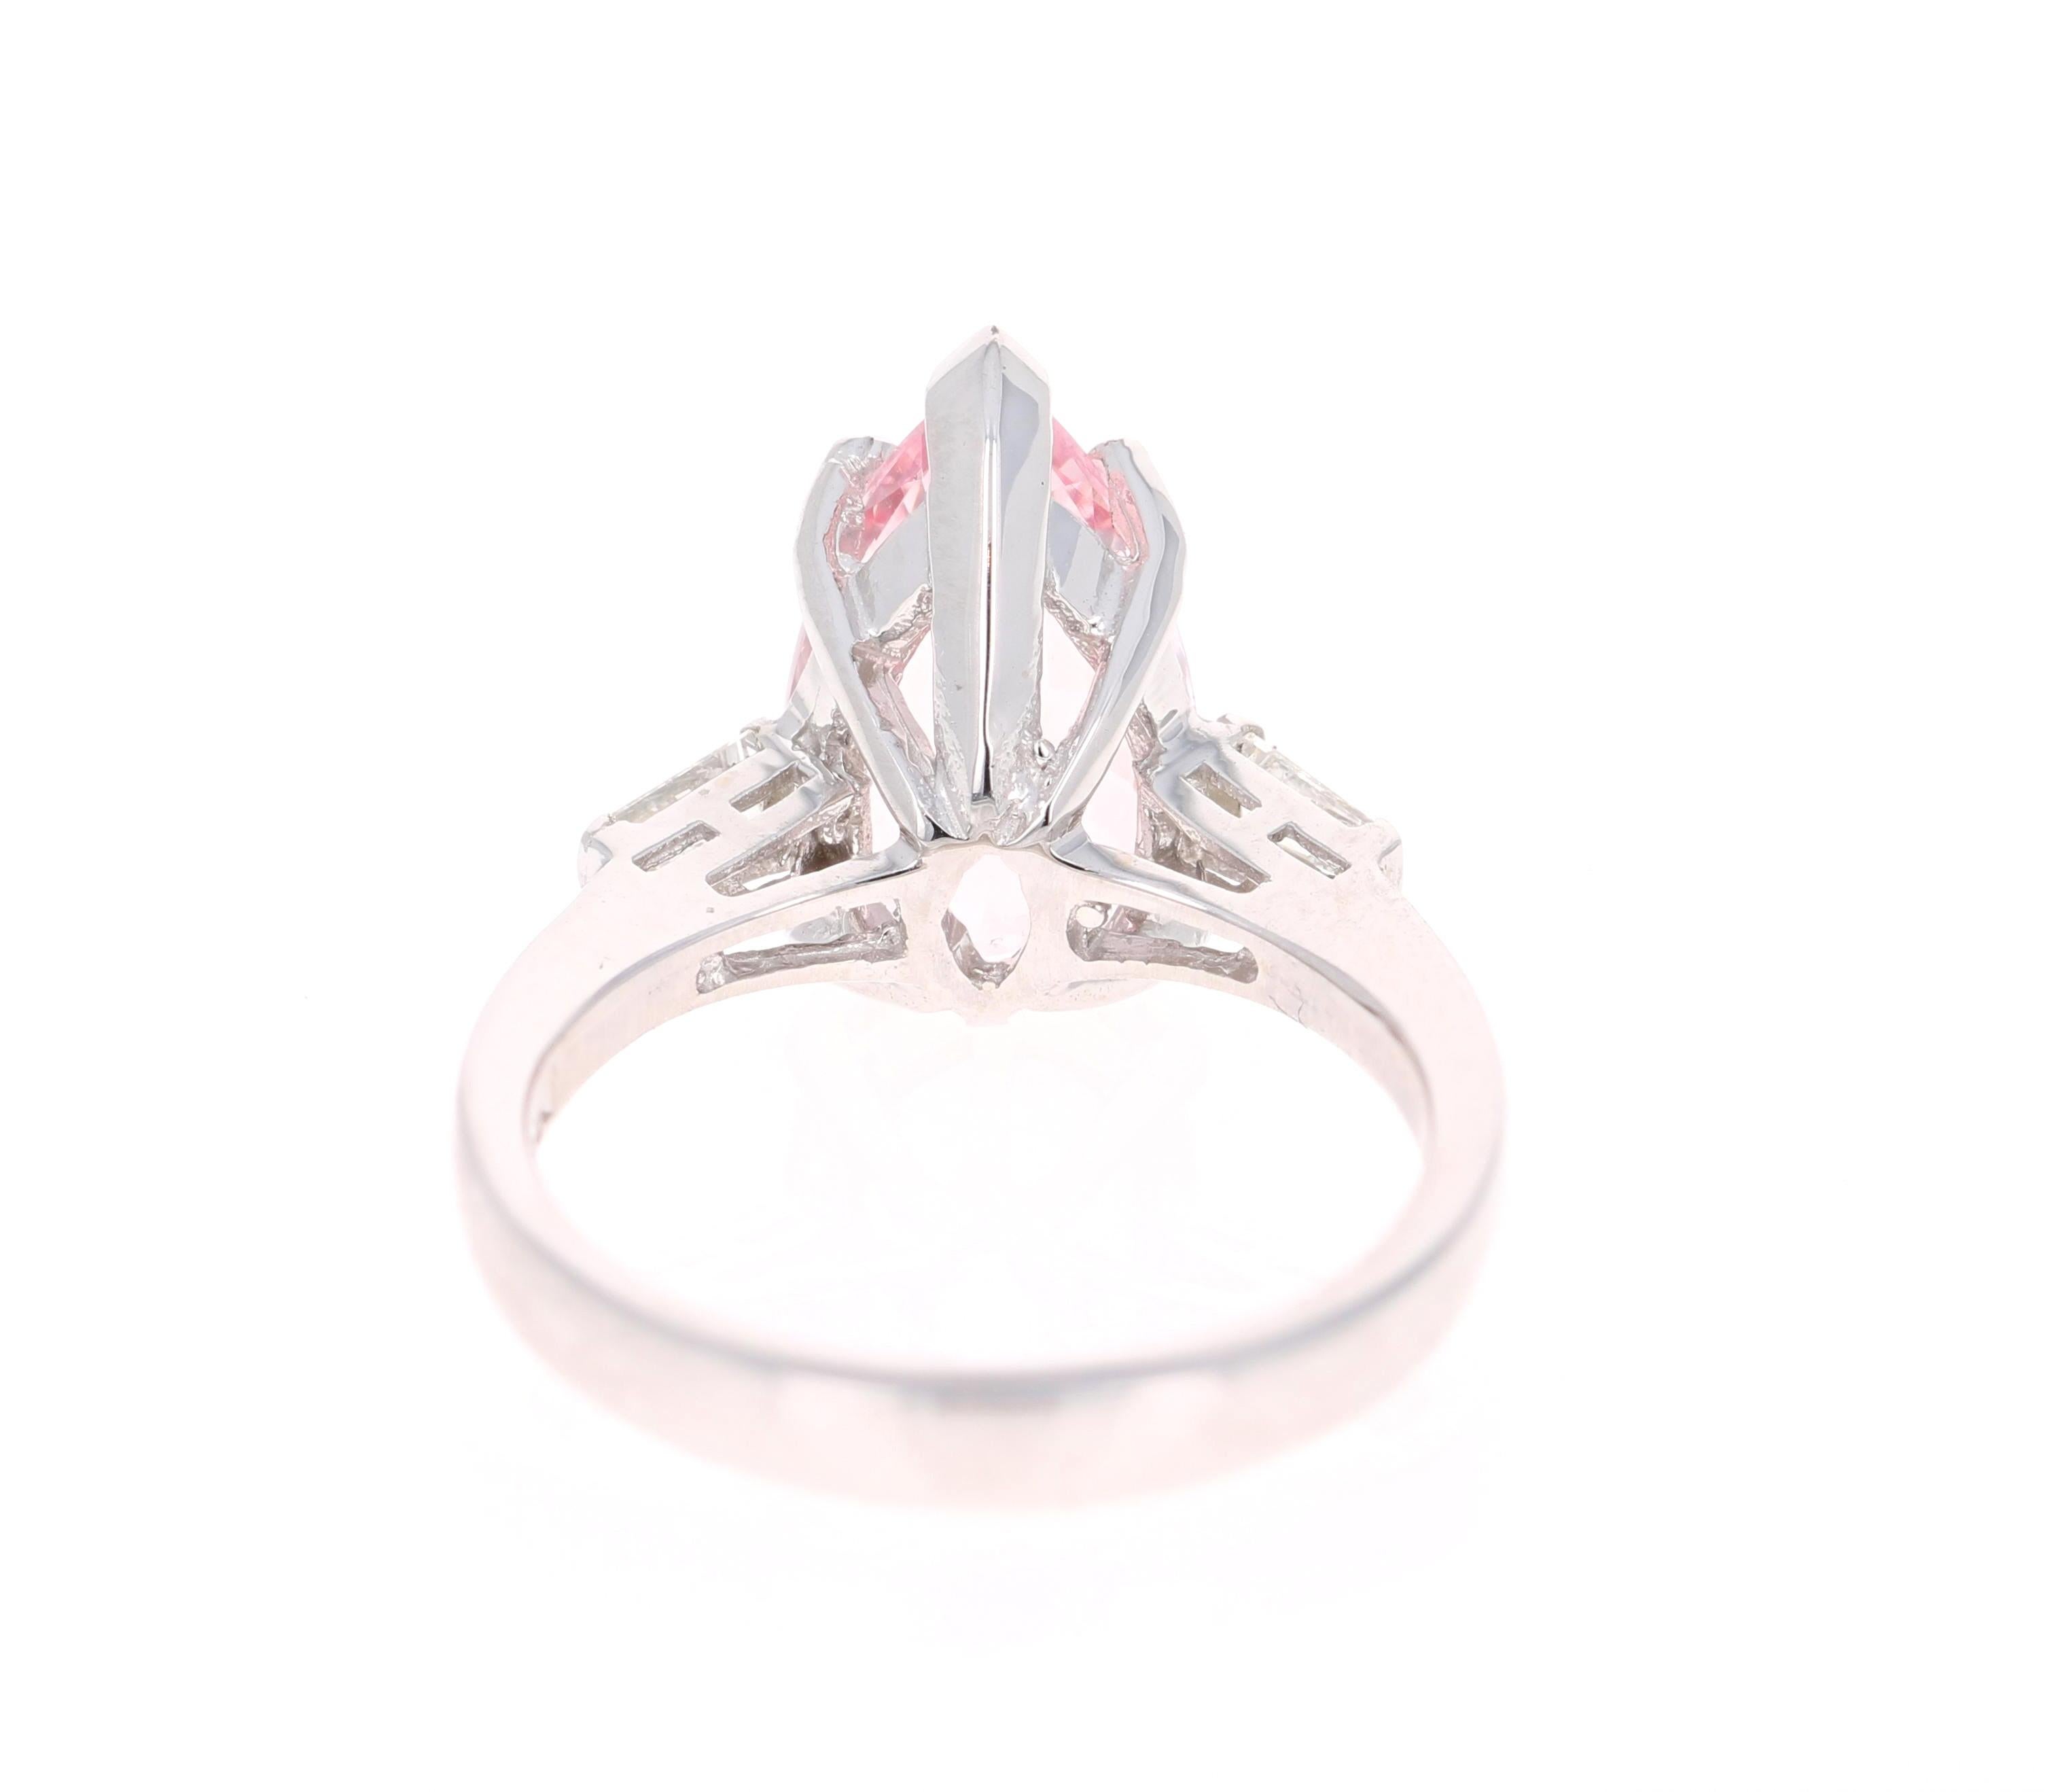 3.90 Carat Pear Cut Pink Morganite Diamond 14 Karat White Gold Engagement Ring 1